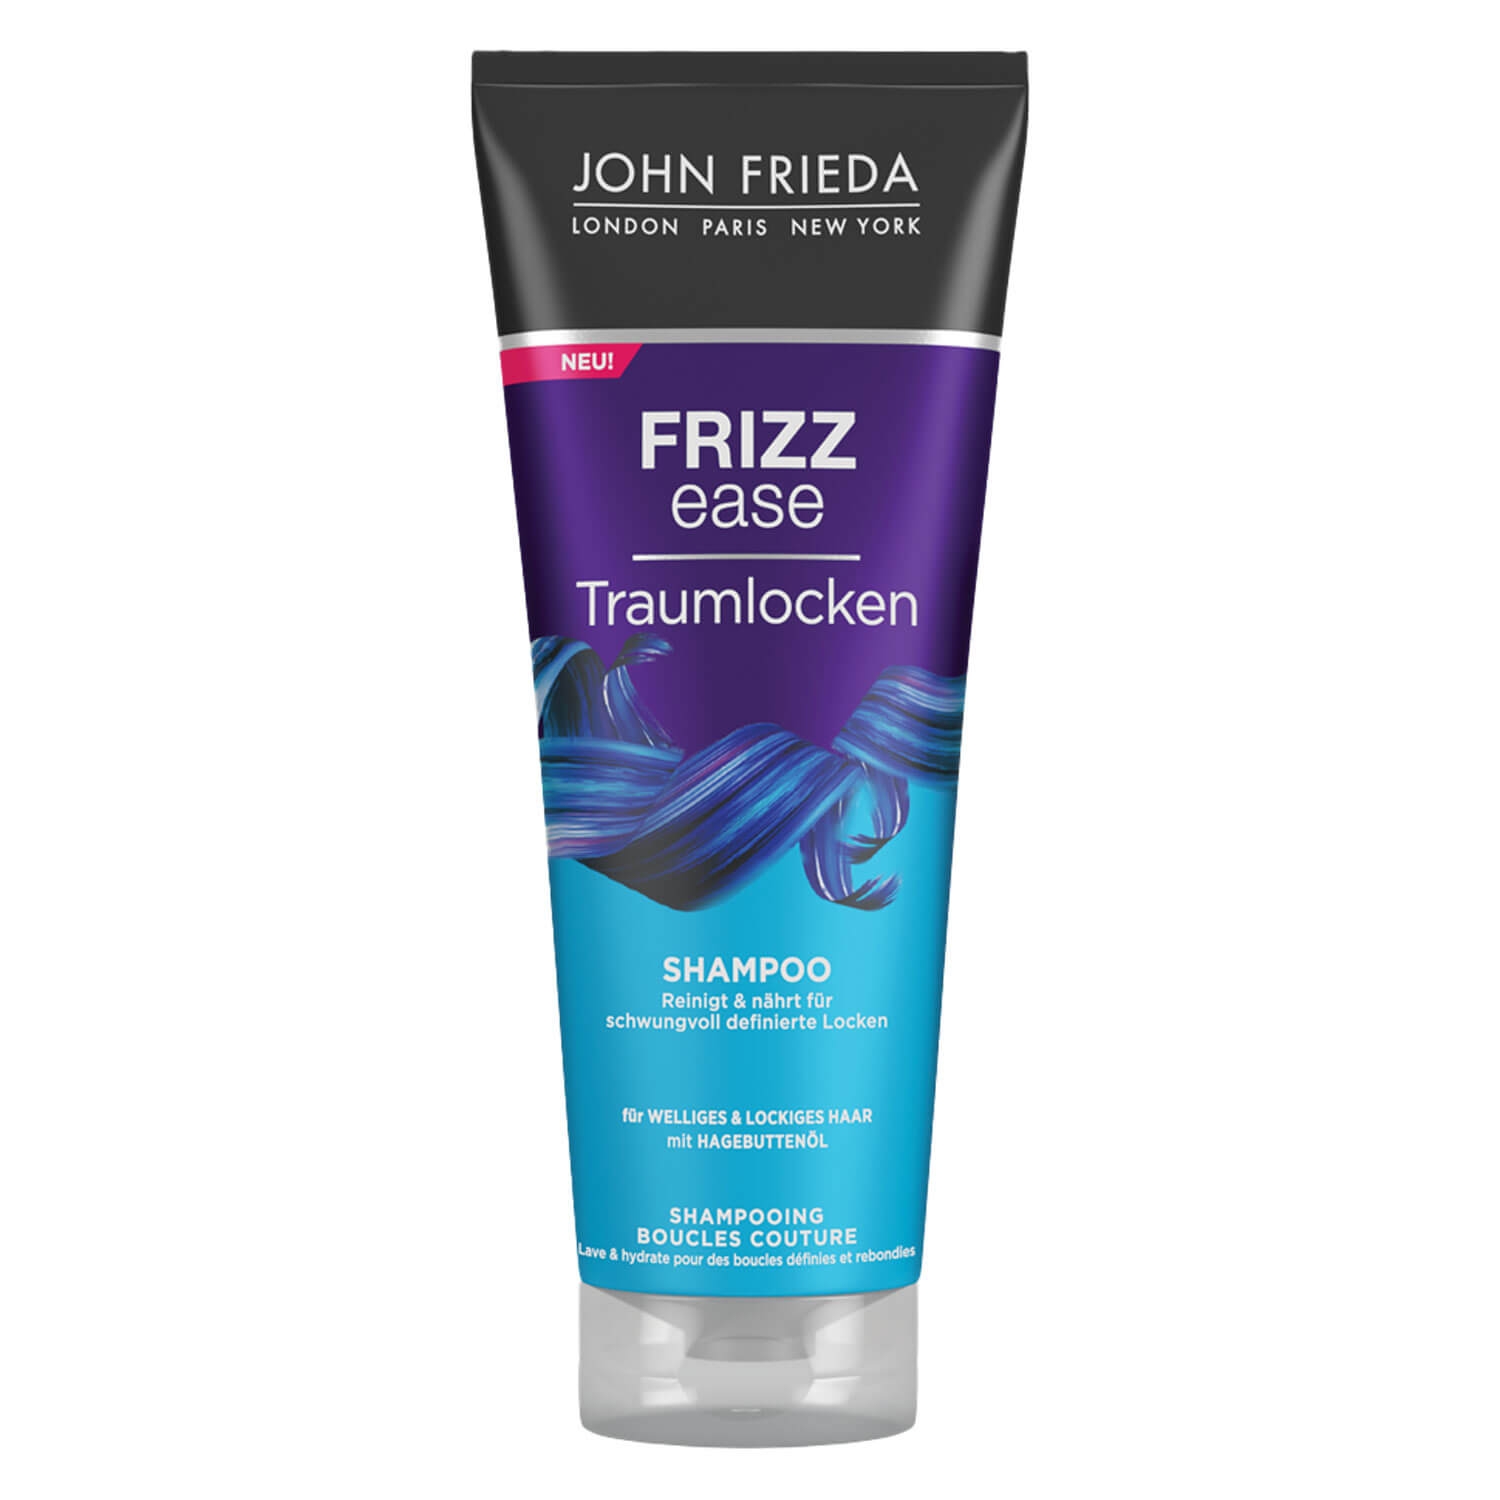 Produktbild von Frizz Ease - Traumlocken Shampoo